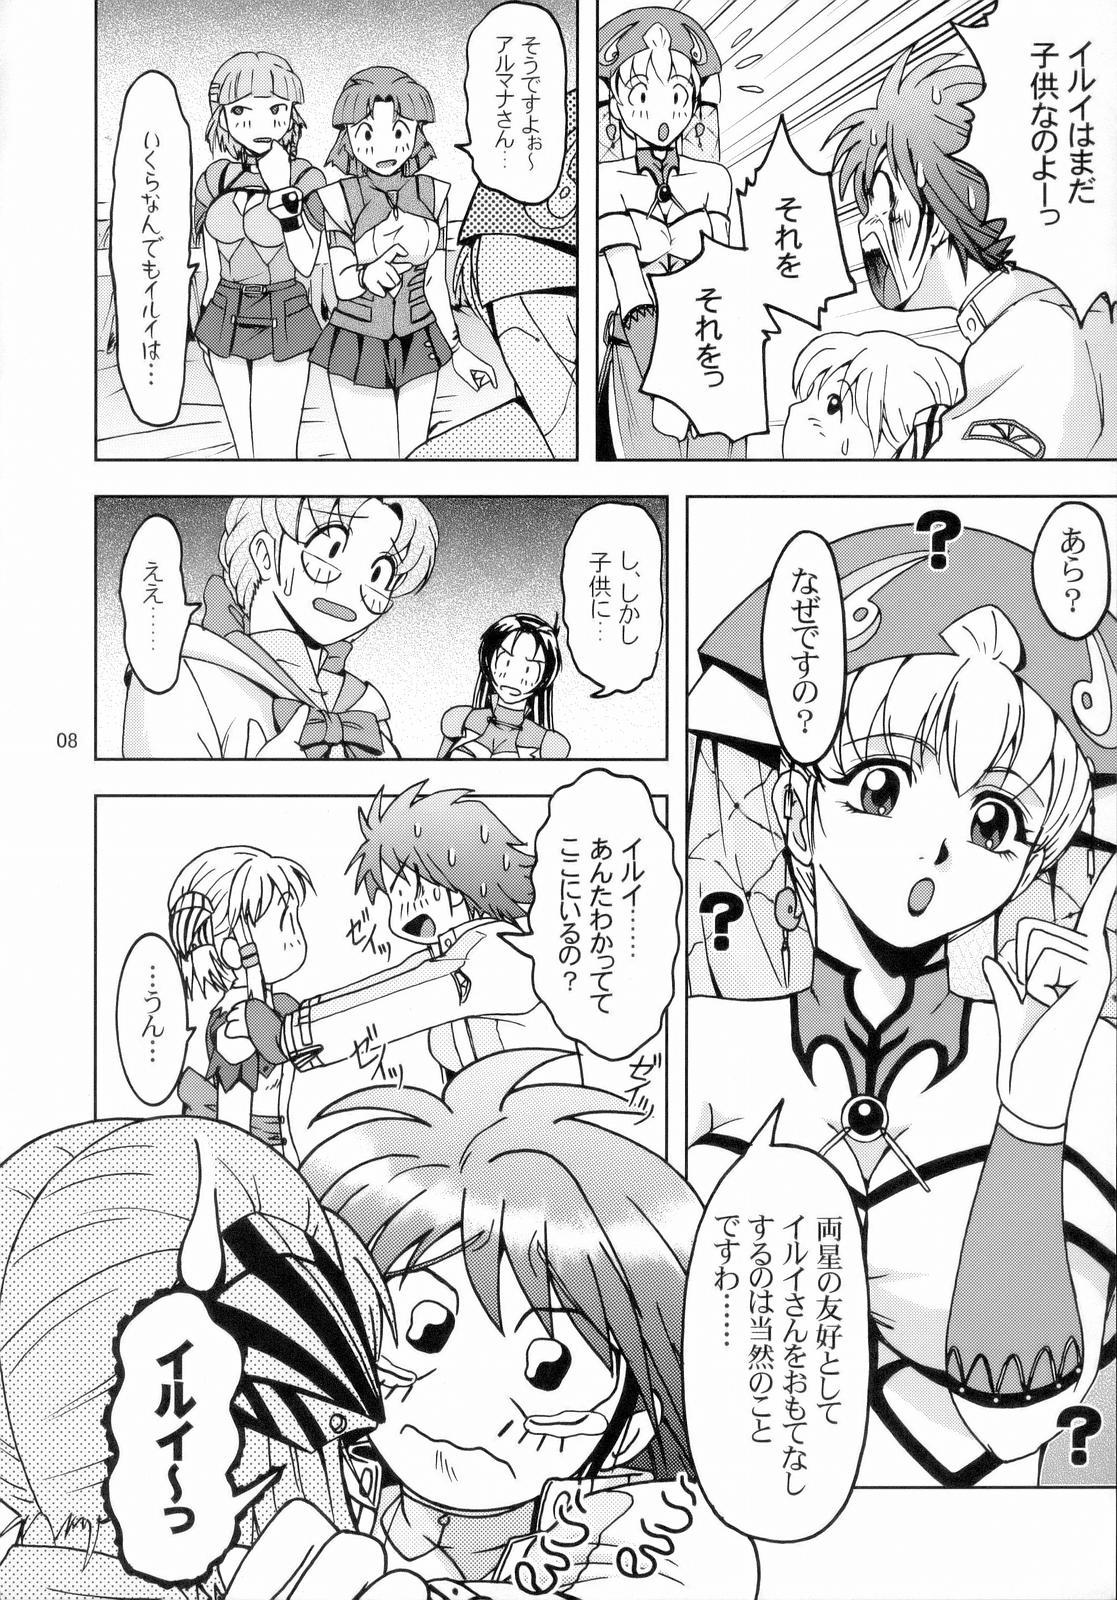 Safado Himitsu no Special Stage NEXT - Super robot wars Gay Kissing - Page 7